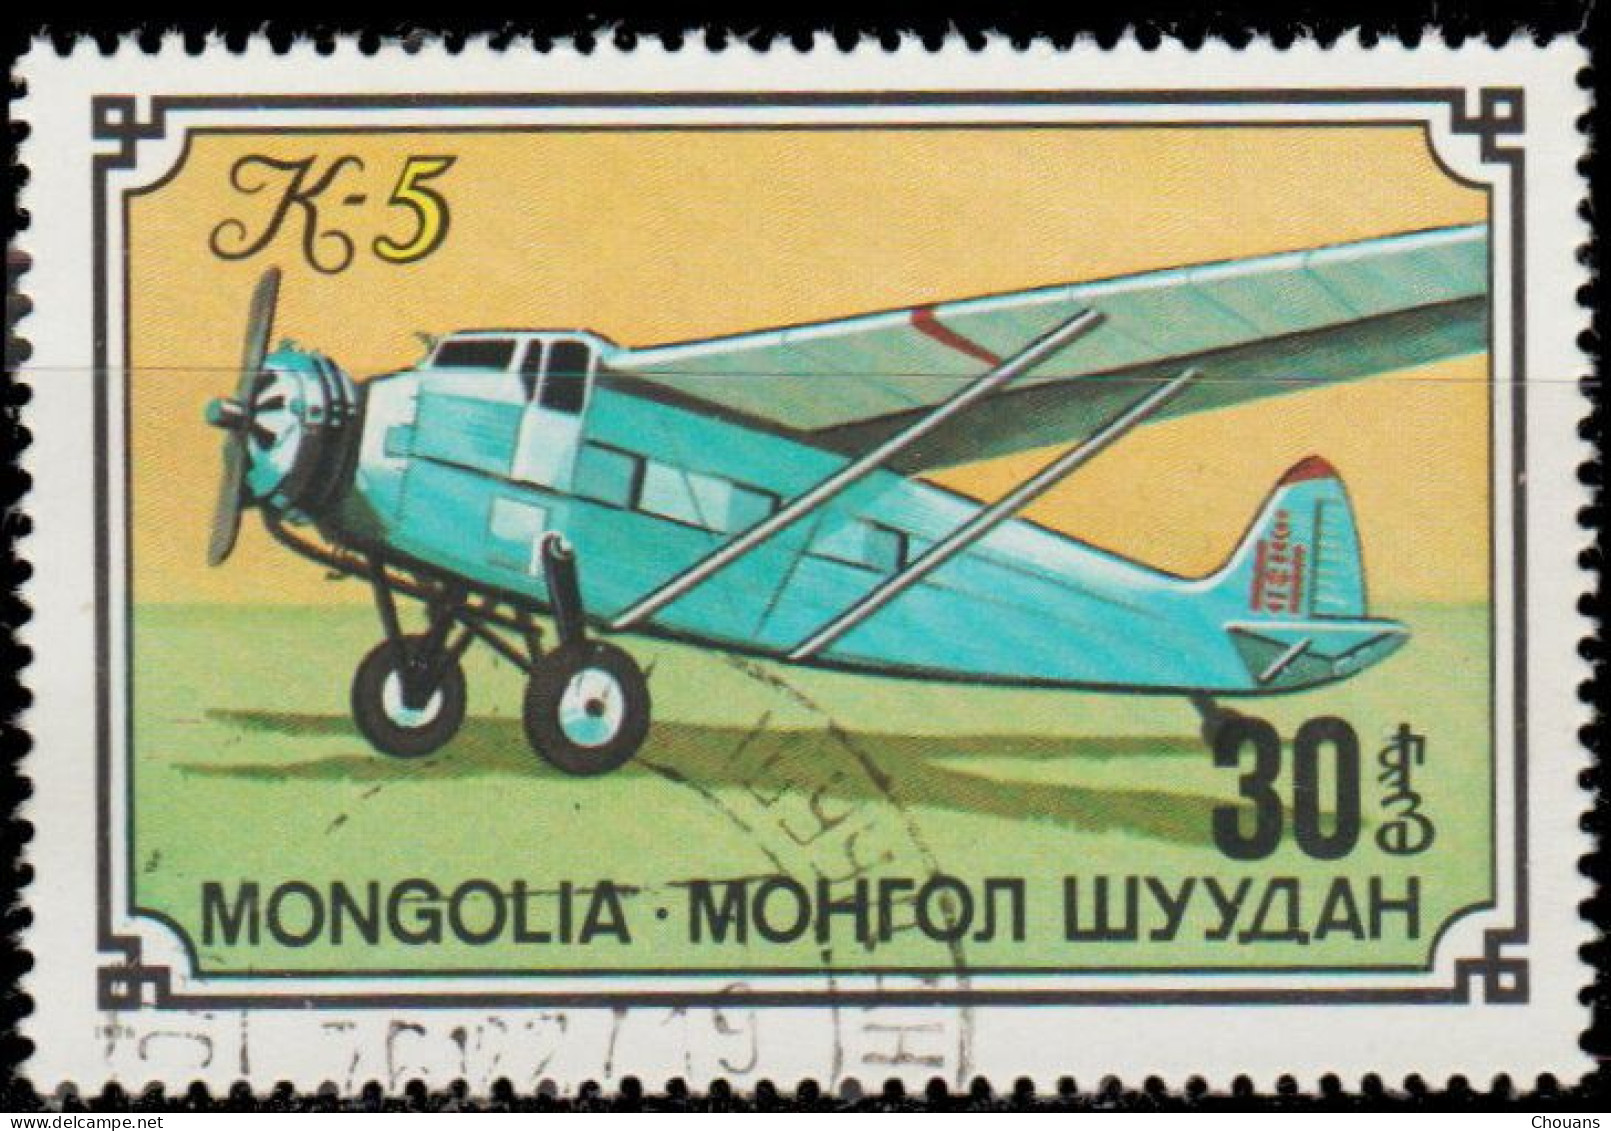 Mongolie 1976. ~ YT 873 - Avion K - 5 - Mongolia